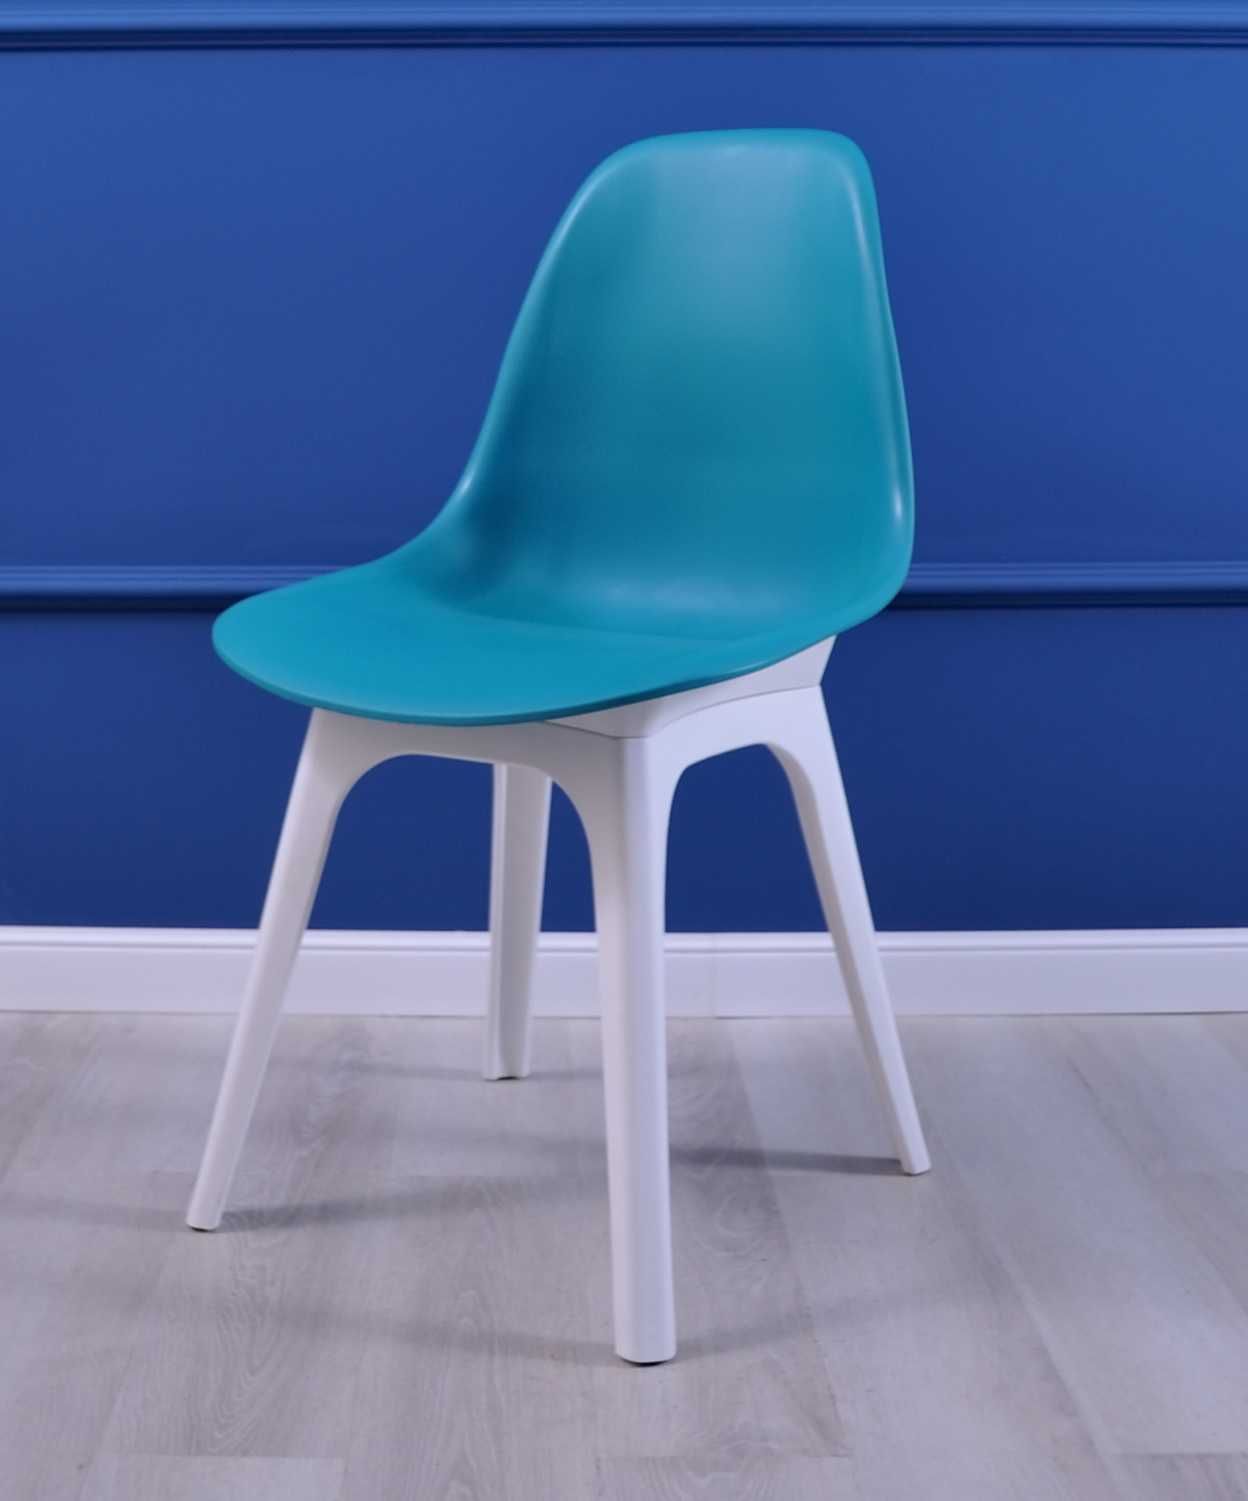 Стул пластиковый Имс кухонный стул кресло пластиковый зеленый